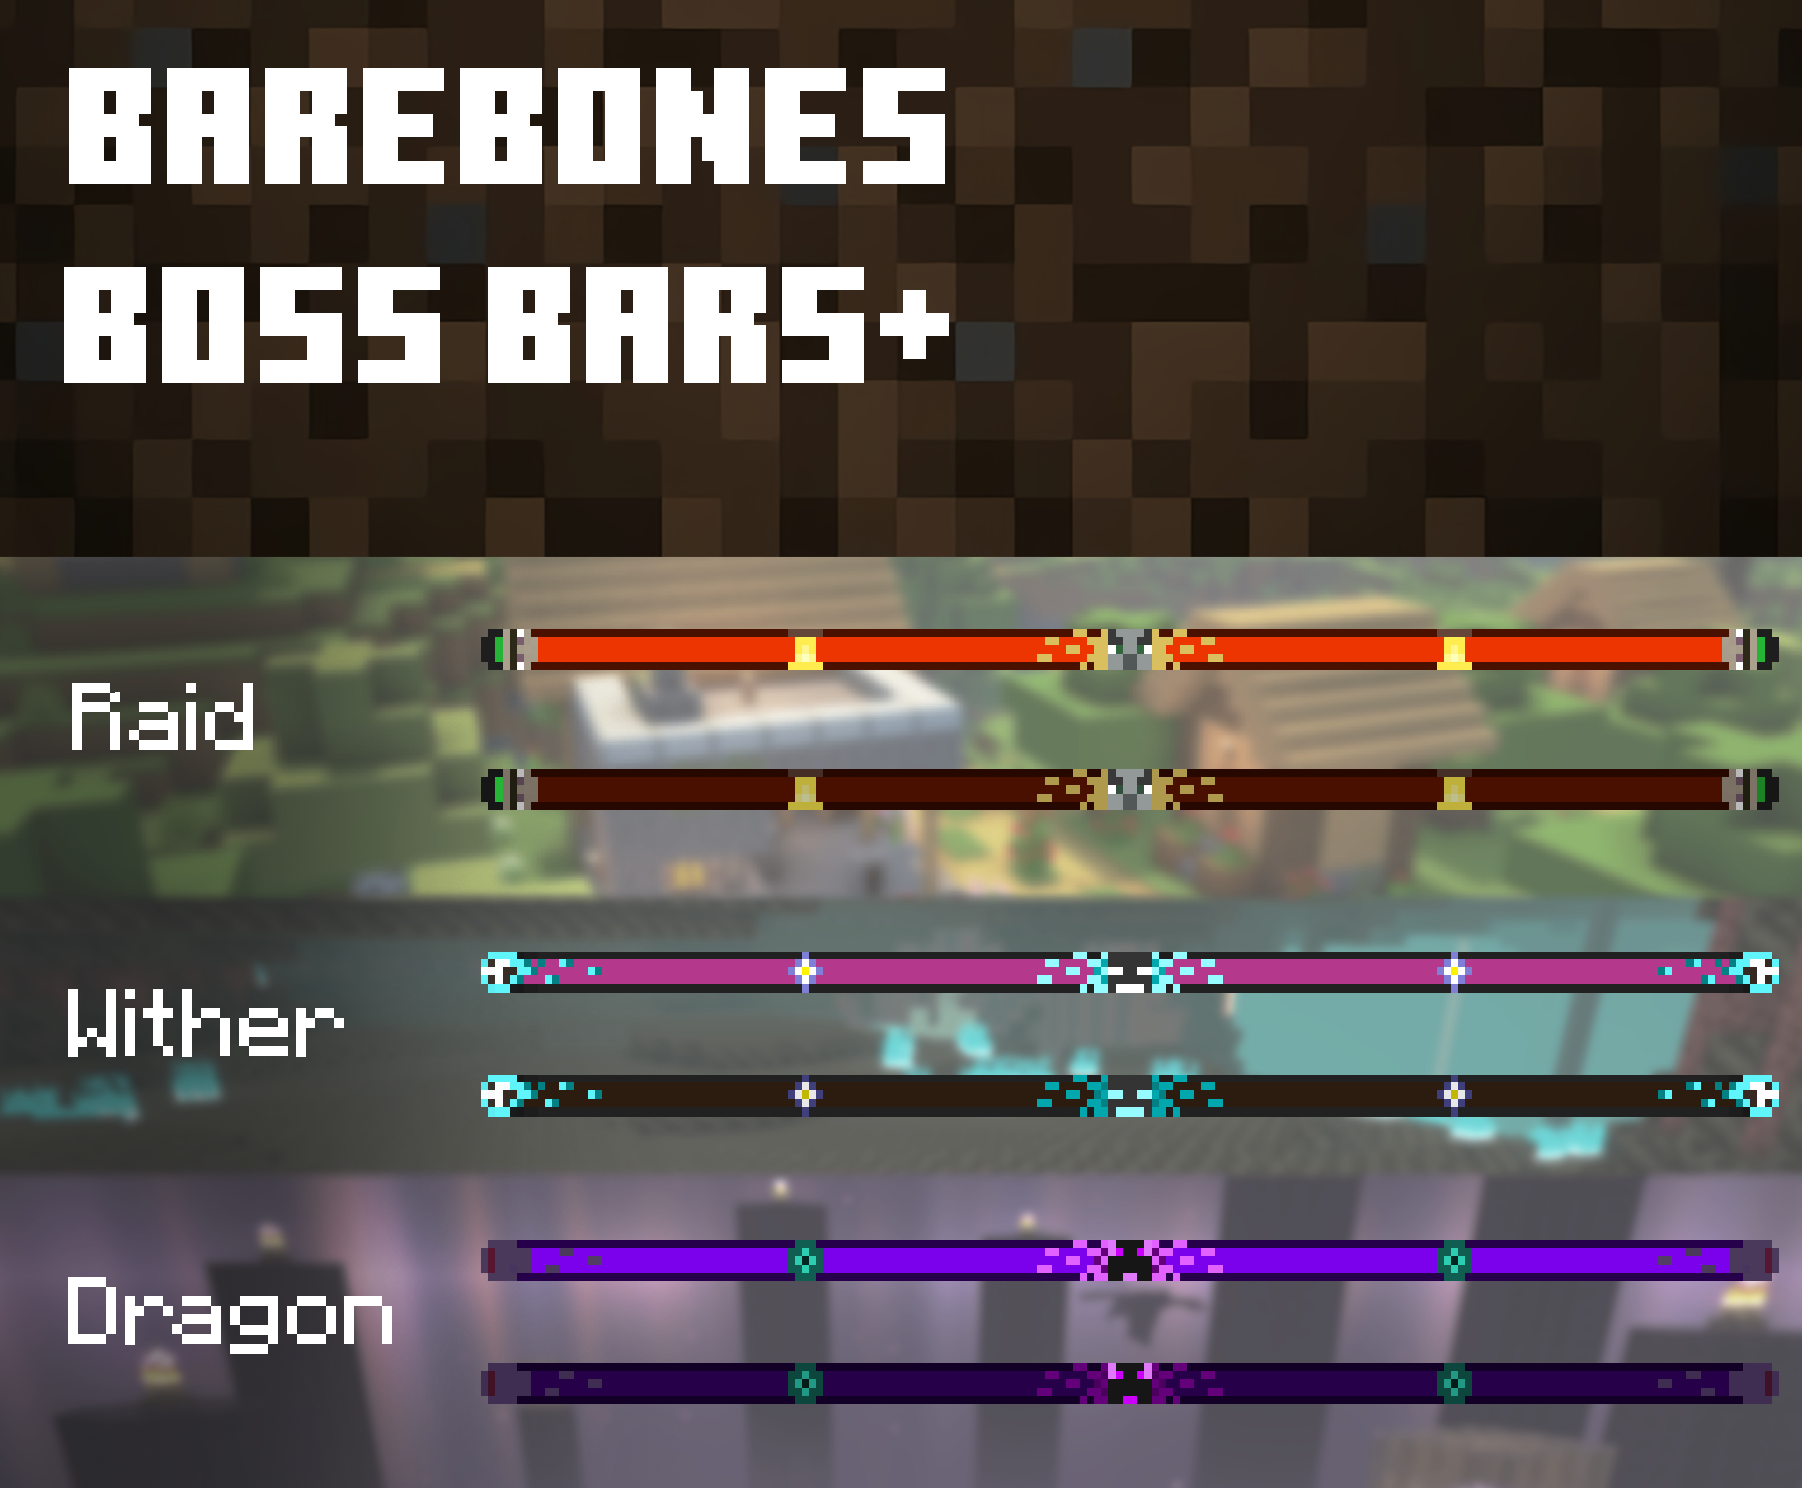 Showcase comparison for bareboens bossbars 